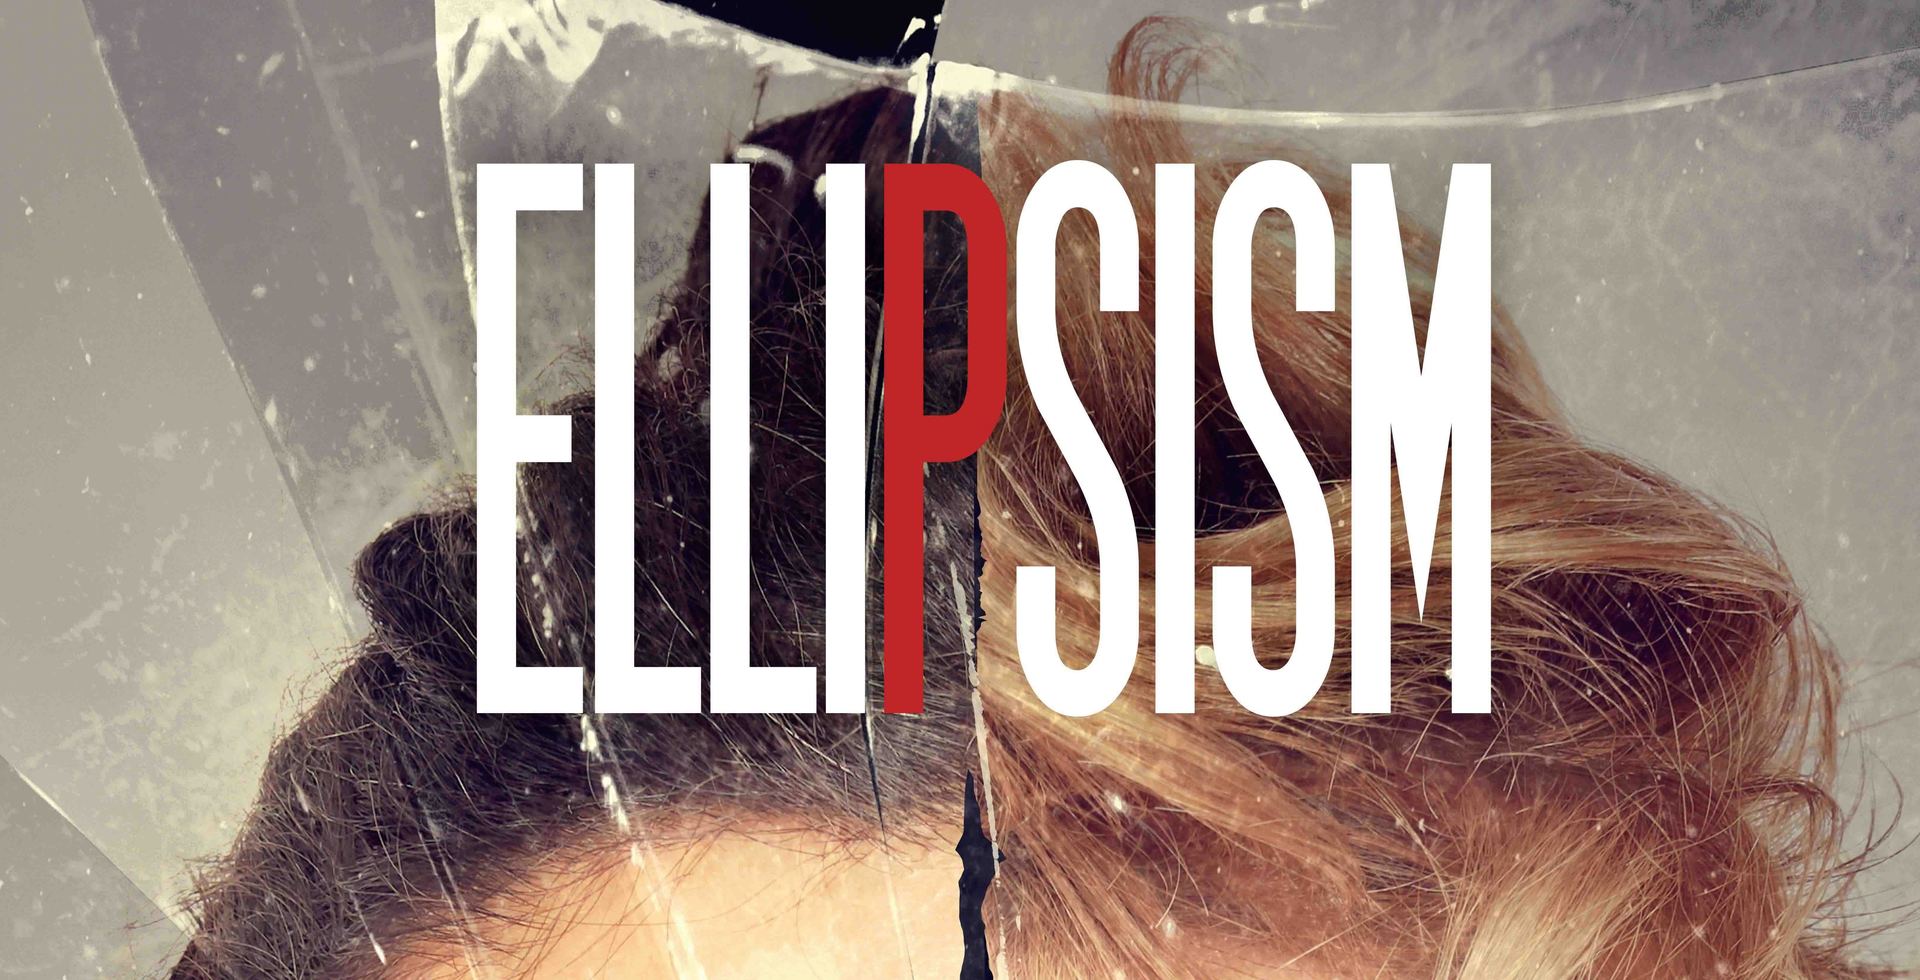 imagen de cabecera del cortometraje de ficción Ellipsism